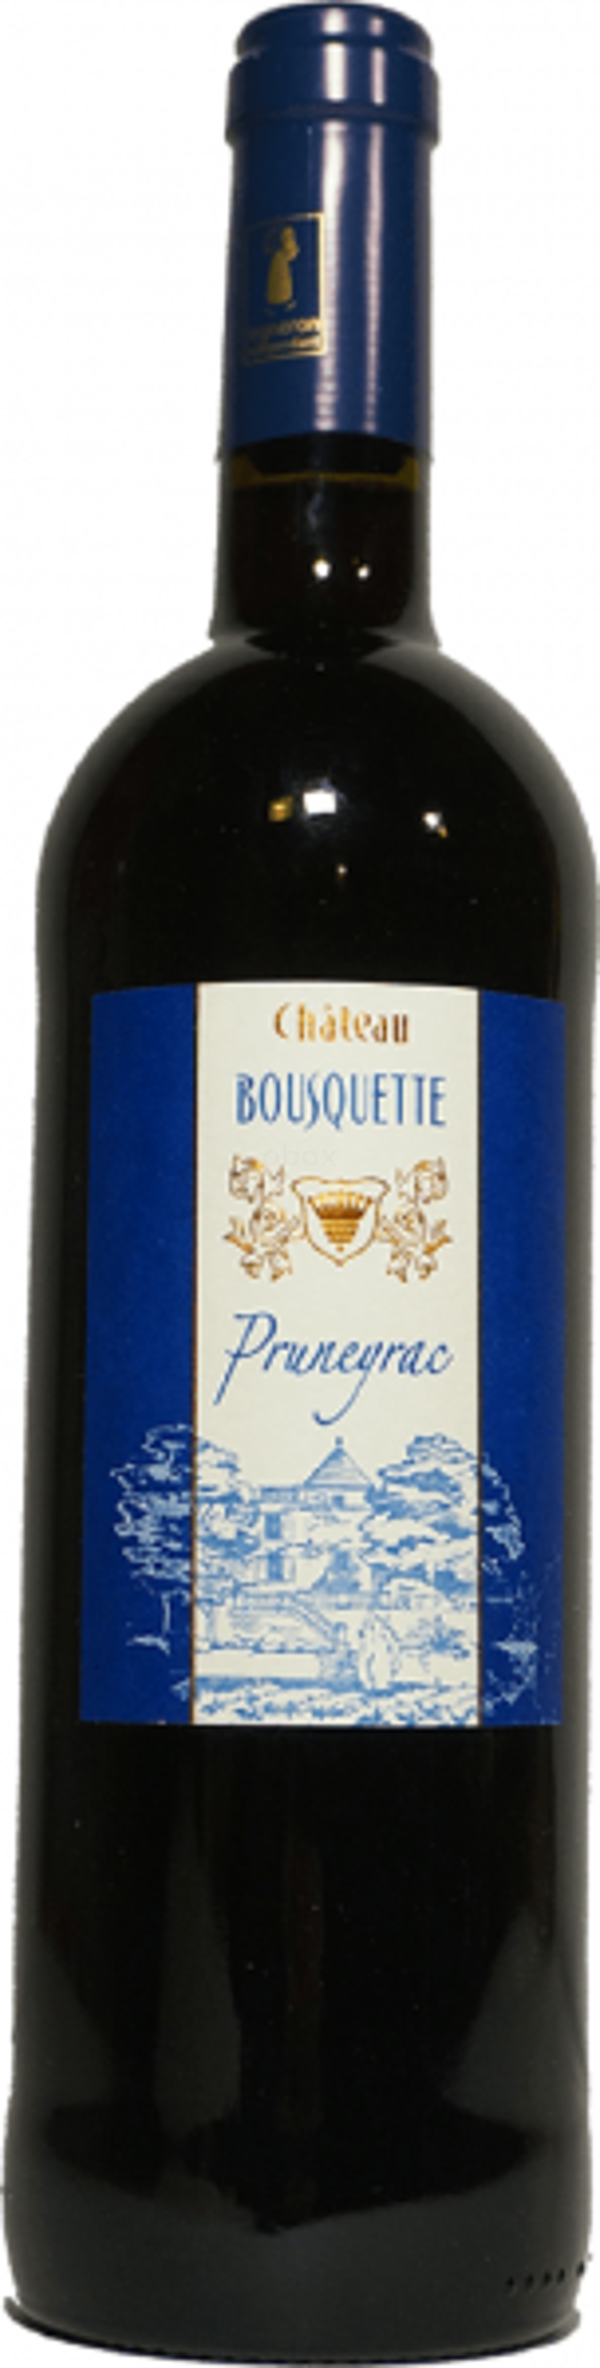 Produktfoto zu Chateau Bousquette Pruneyrac, 0,75 l